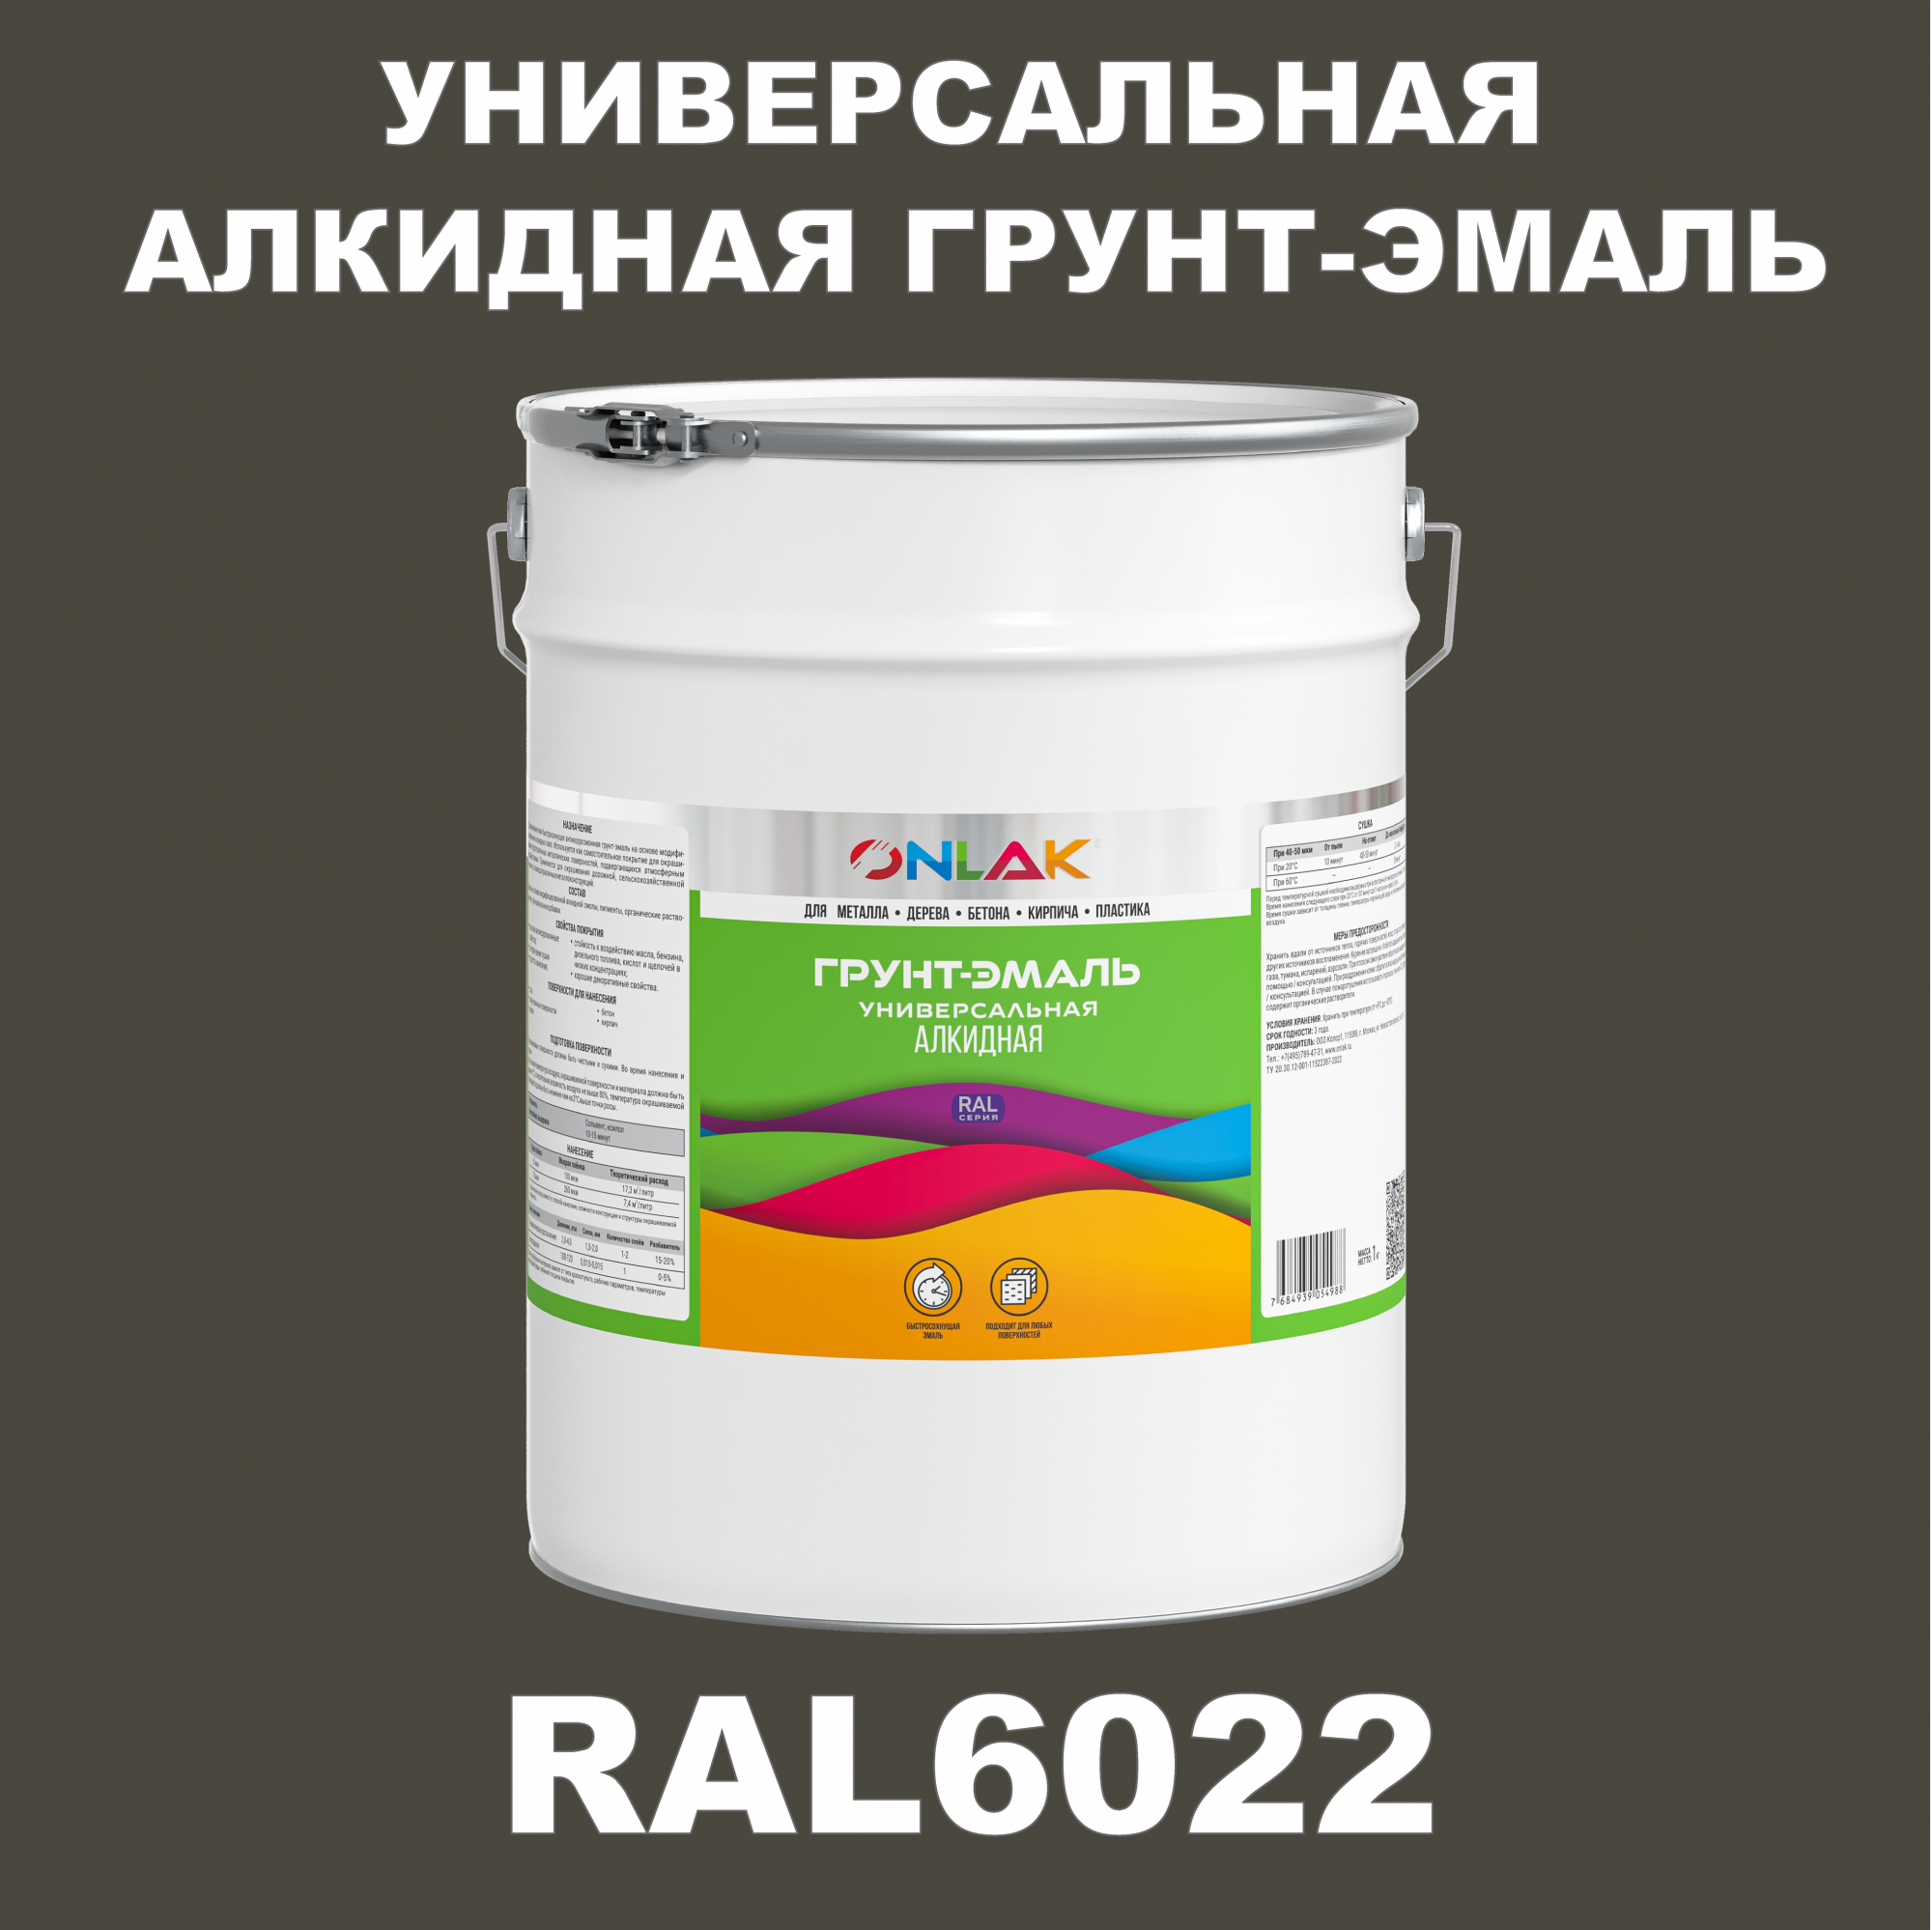 Грунт-эмаль ONLAK 1К RAL6022 антикоррозионная алкидная по металлу по ржавчине 20 кг